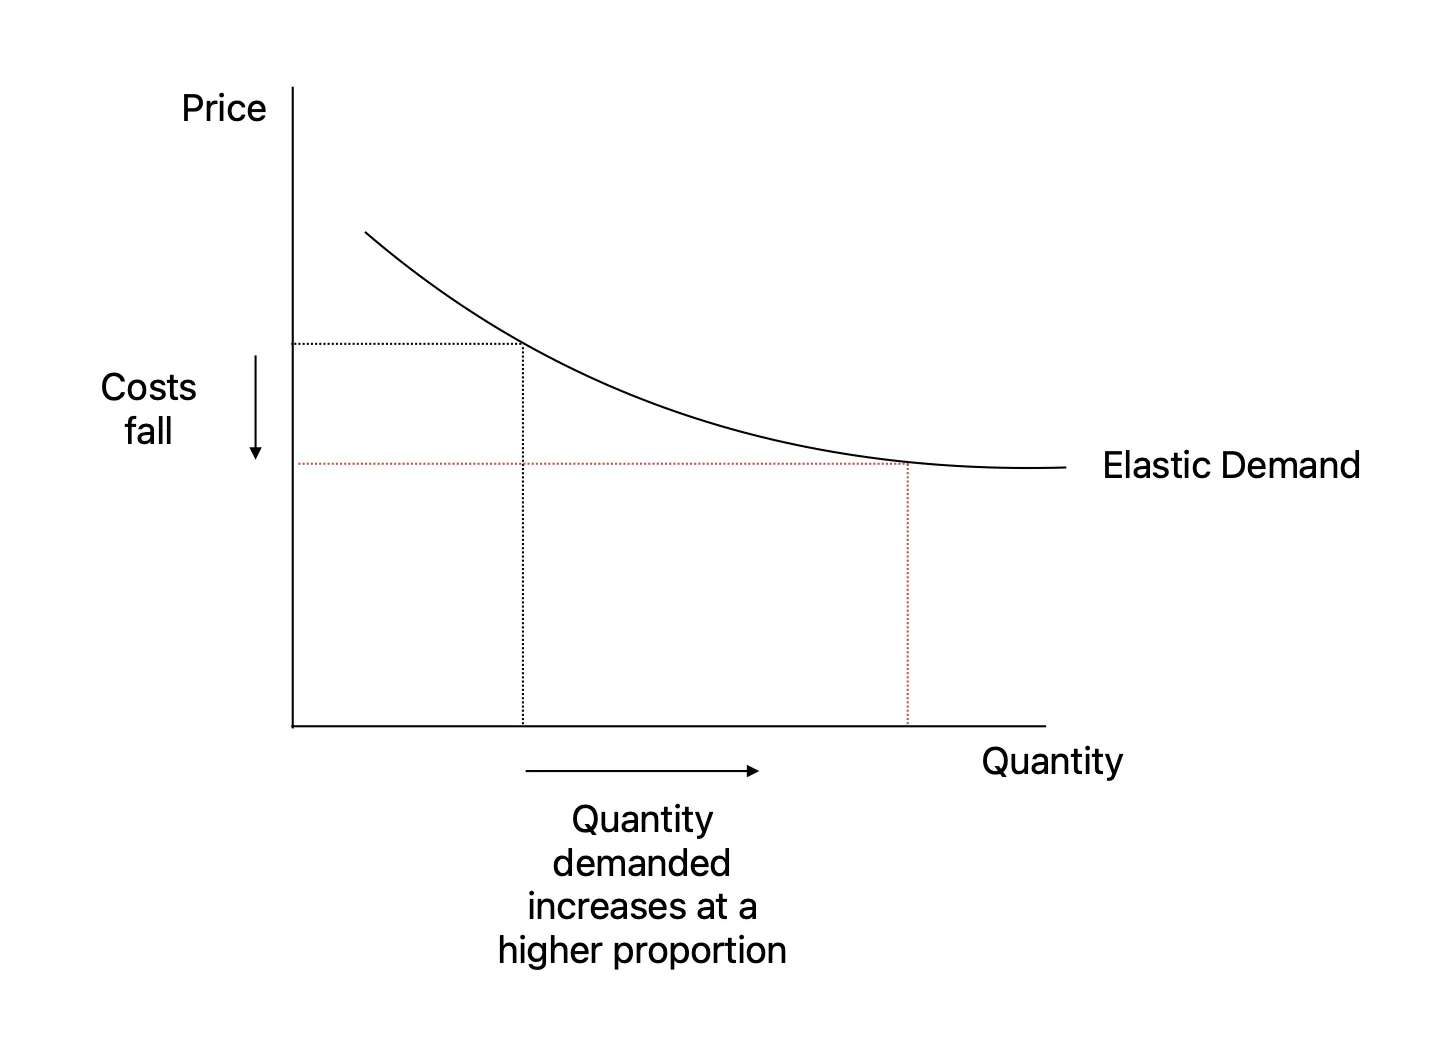 此图为杰文斯悖论的示意图，图中垂直轴表示价格，水平轴表示数量。图上的供应曲线标有“弹性需求”字样，并呈下降趋势。这表示随着成本的降低，需求量会按更高的比例增加，从而说明效率提升会带来消费量的增长。